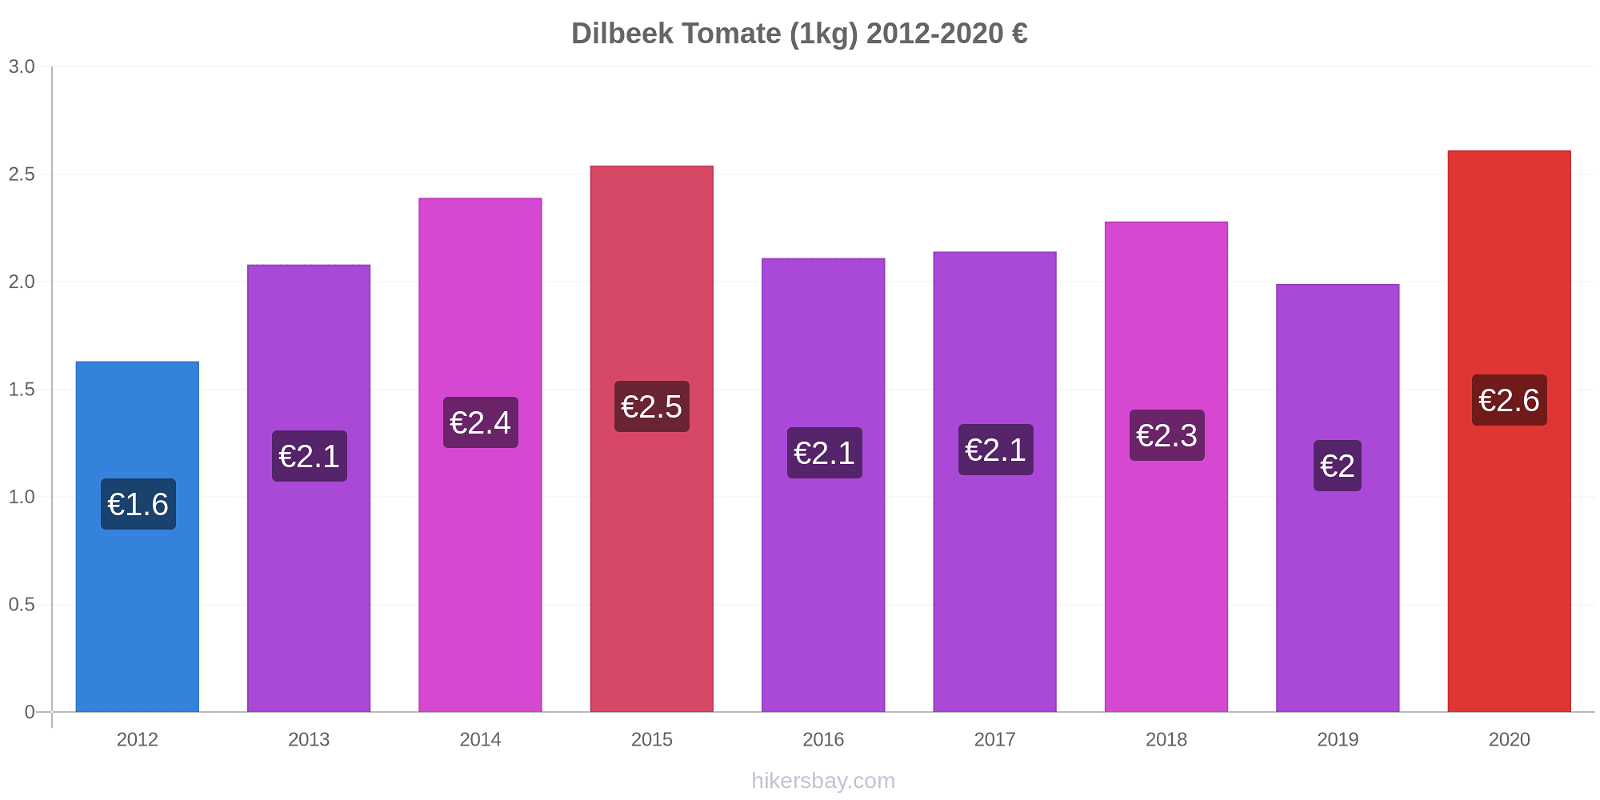 Dilbeek modificări de preț Tomate (1kg) hikersbay.com